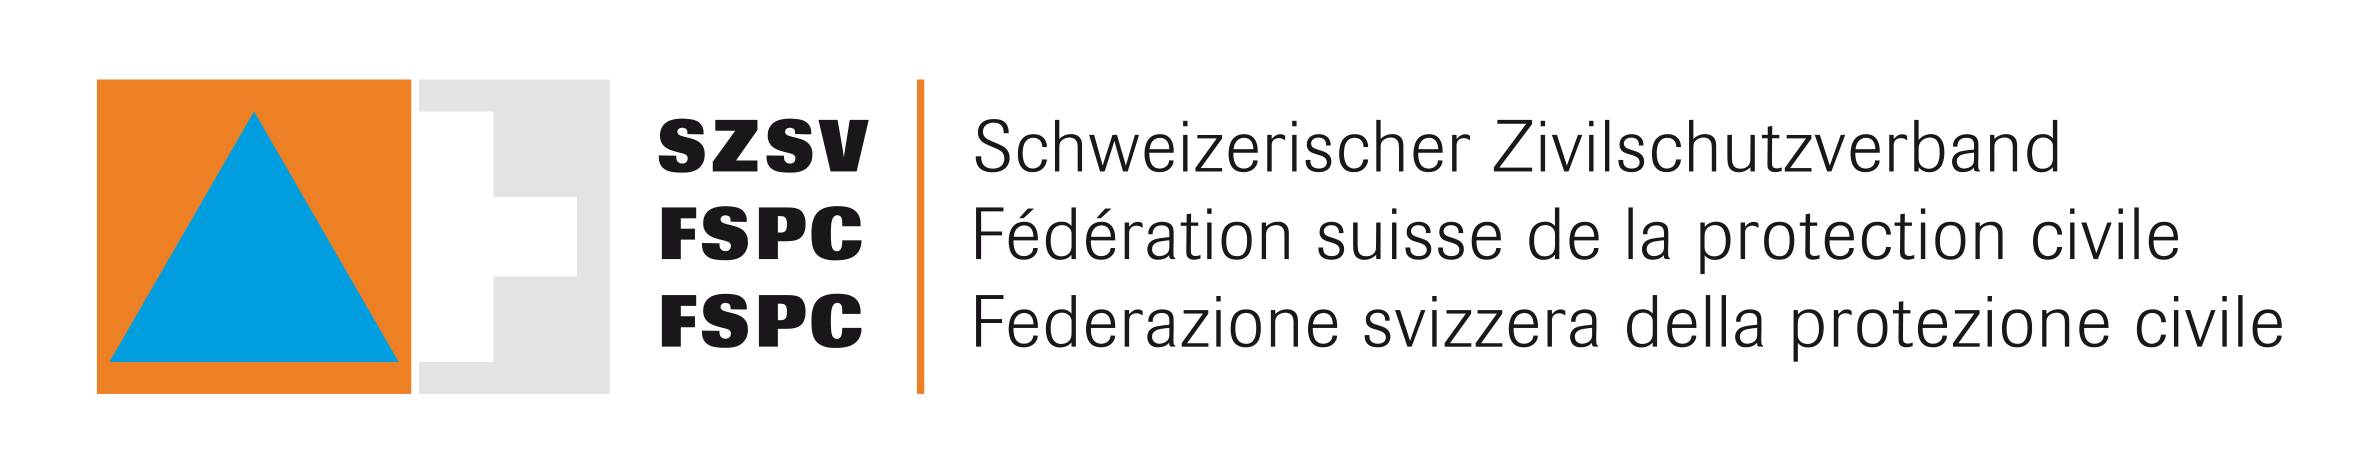 logo szsv freigestellt